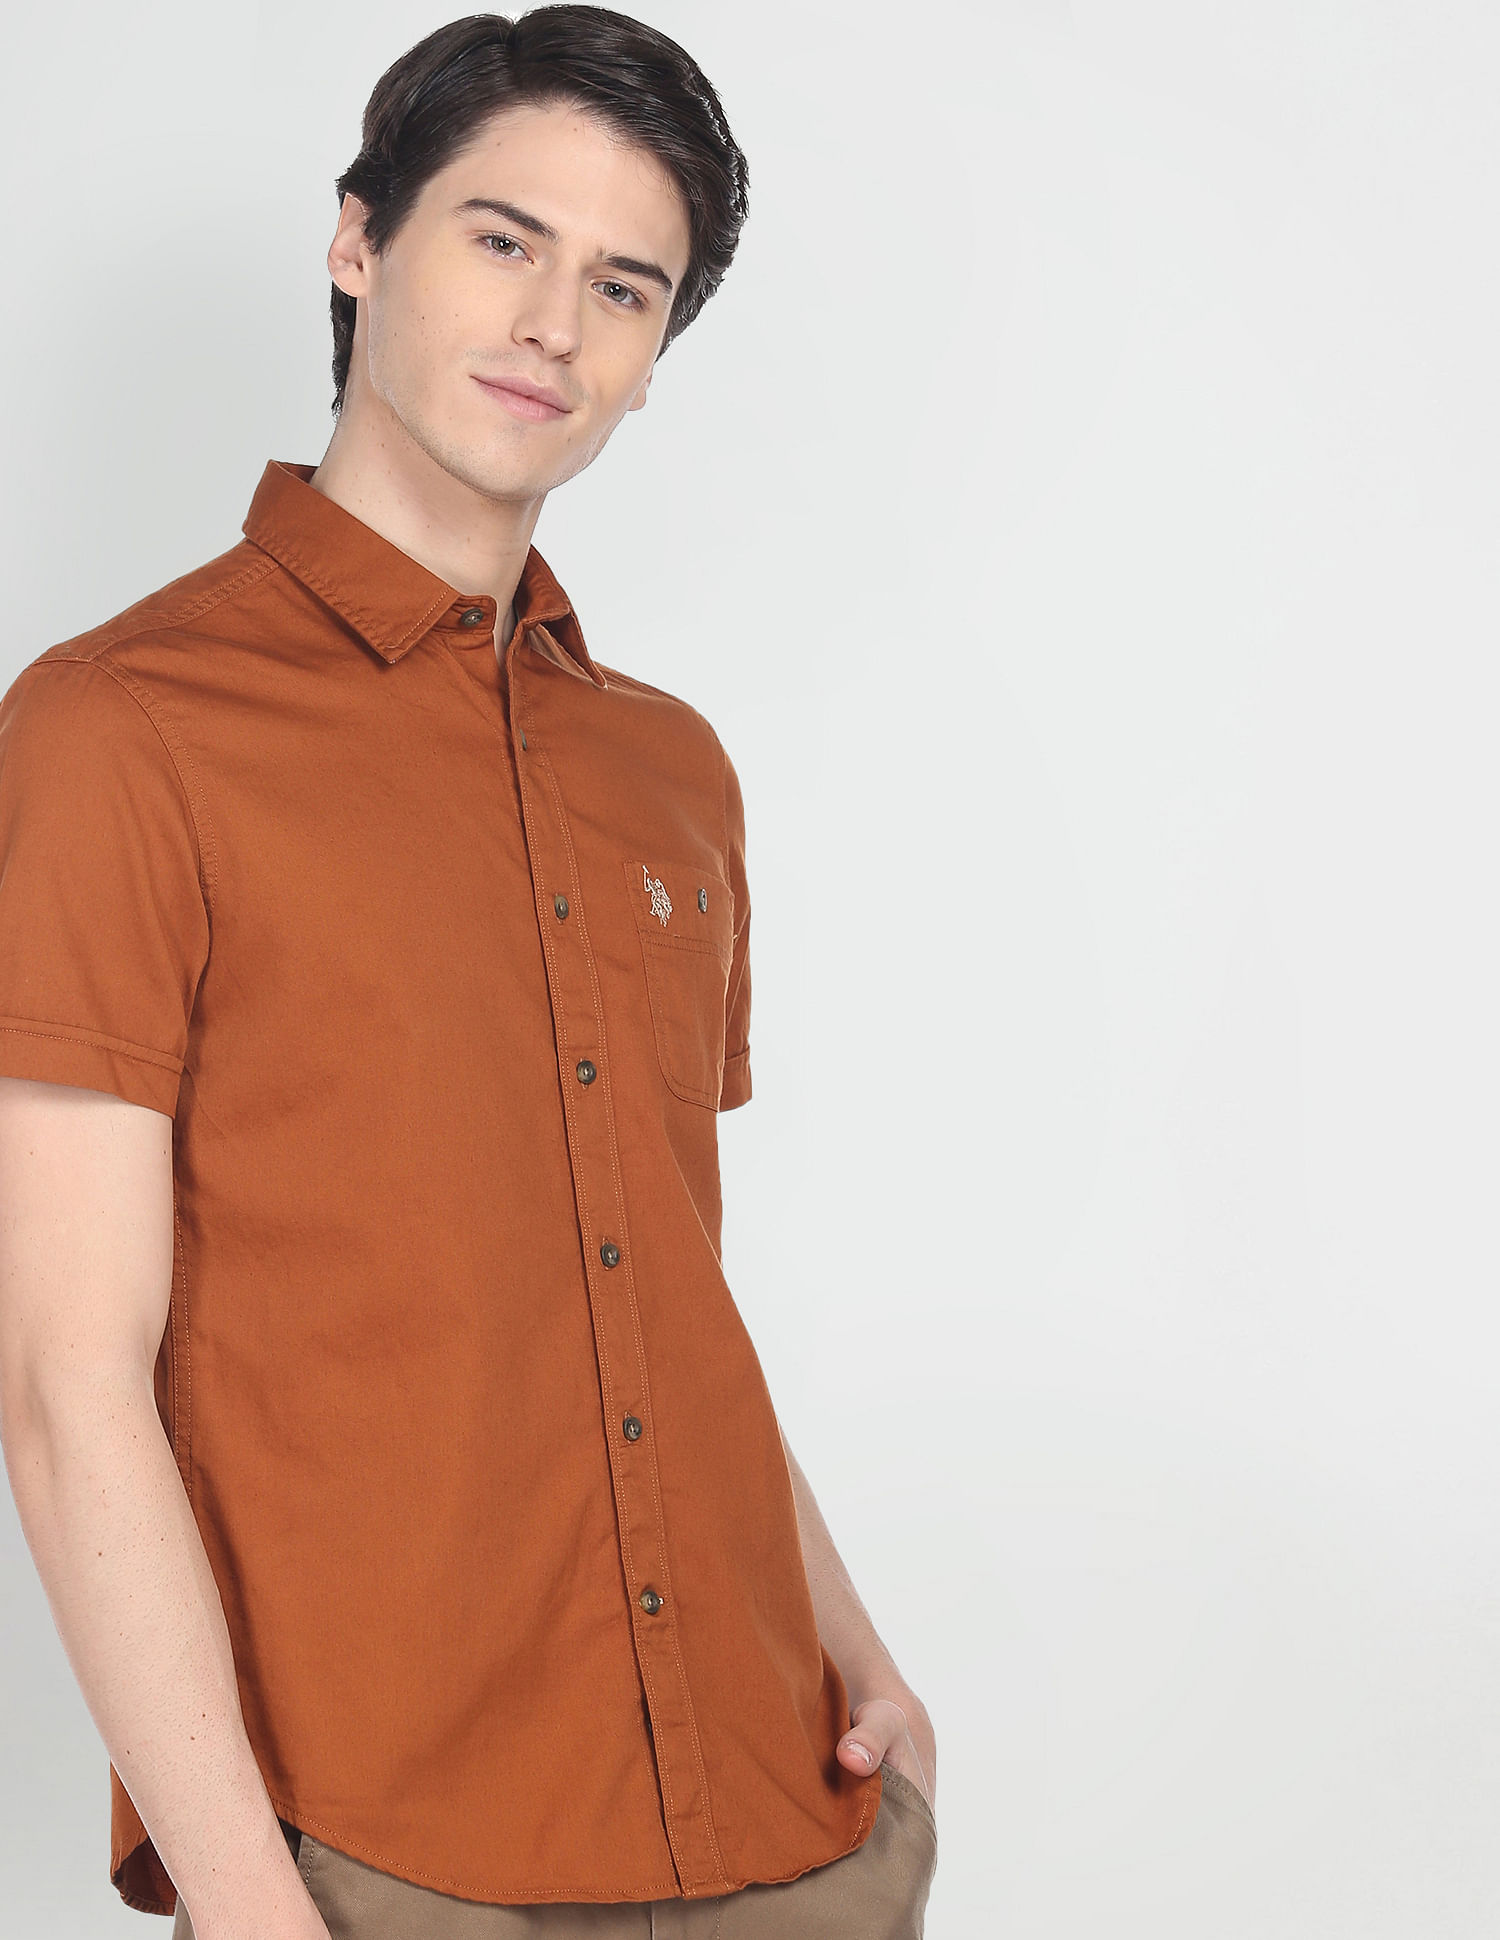 Bare Brown Mandarin Collar Denim Shirt, Slim Fit with Full Sleeves - L |  Tea & Tailoring